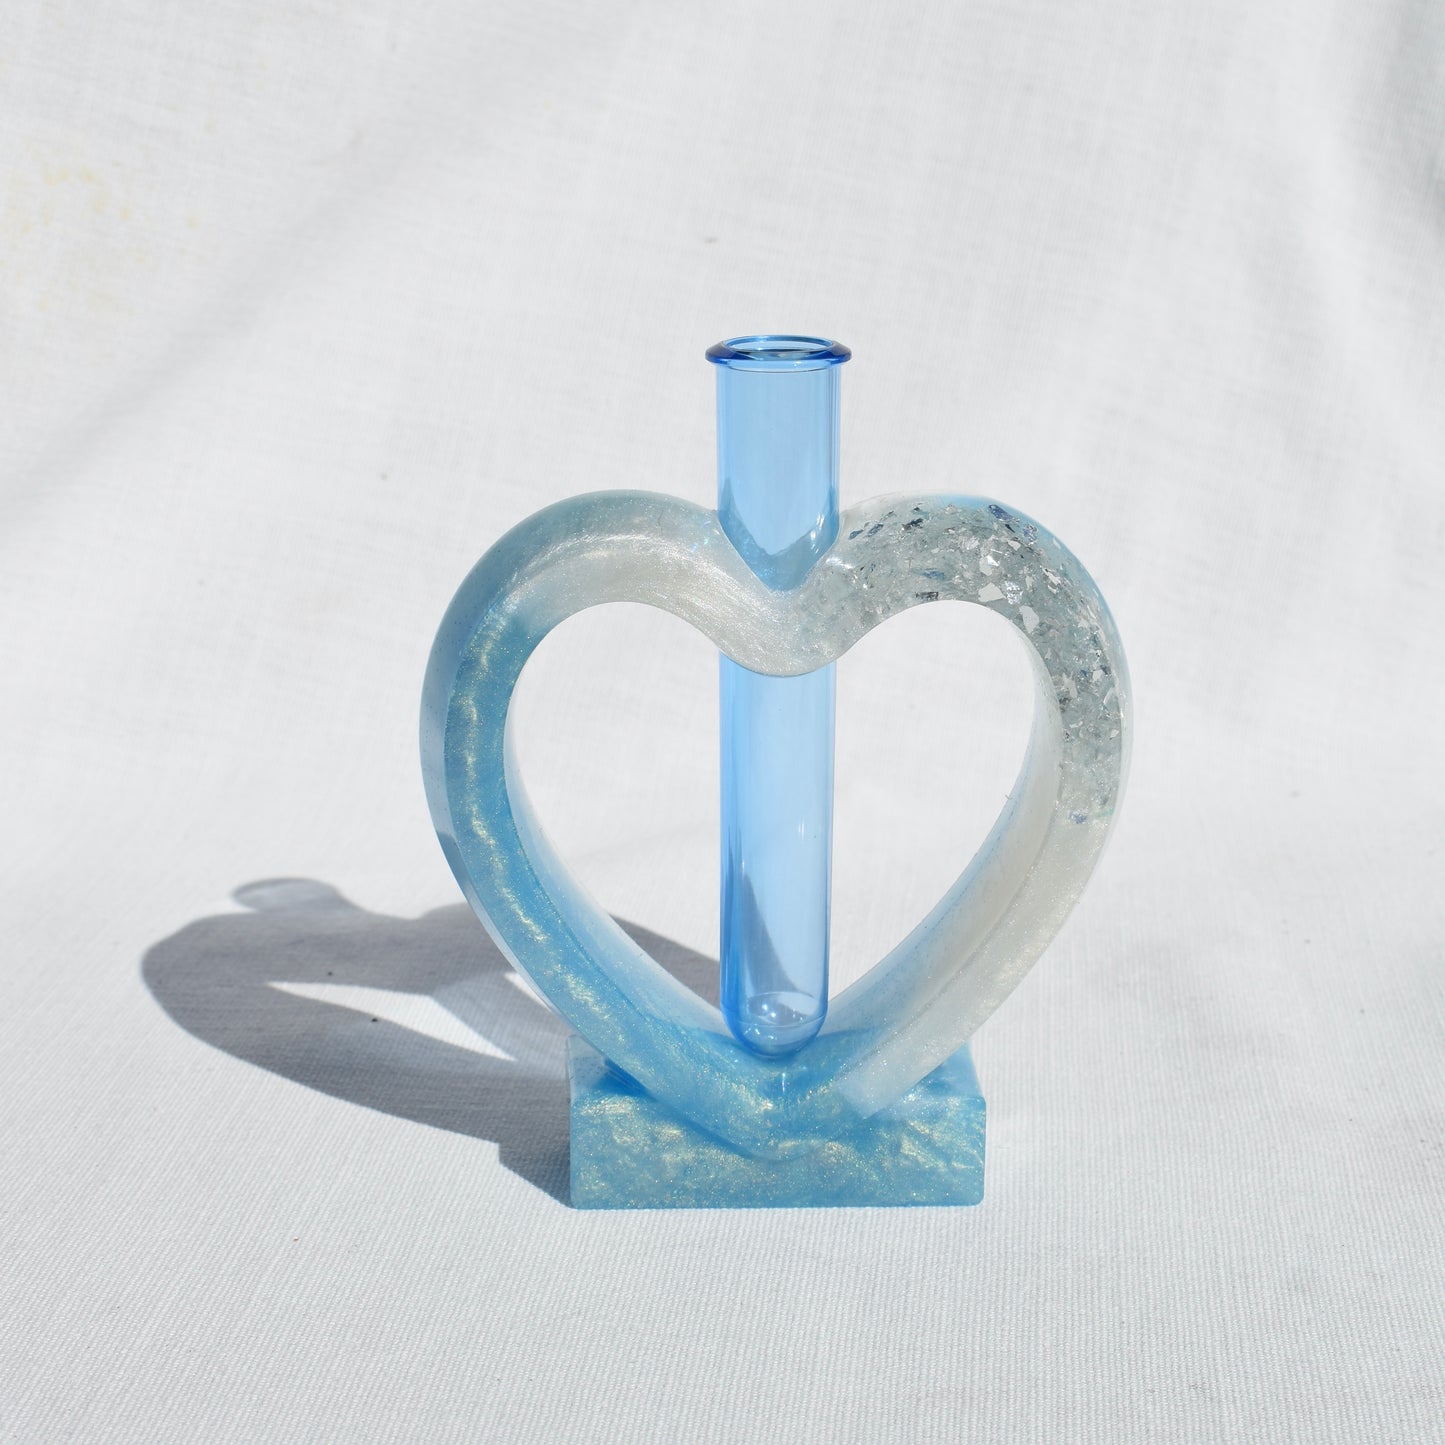 Heart Shaped Propagation Vase (2-piece set) • Hydroponic Plant Cutting Vase • Geometric Vase